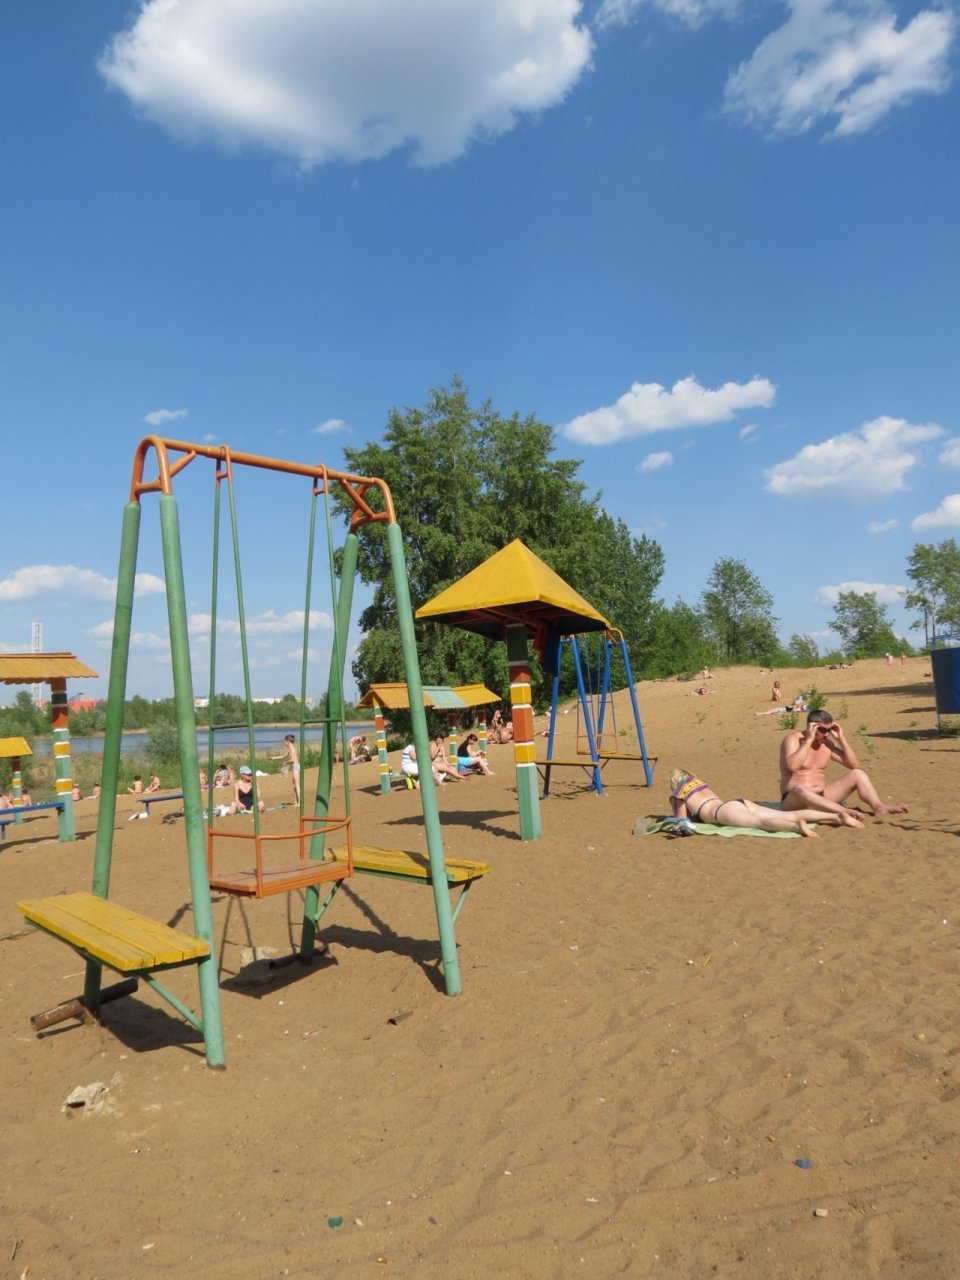 16 пляжей откроют в Нижнем Новгороде летом 2021 года